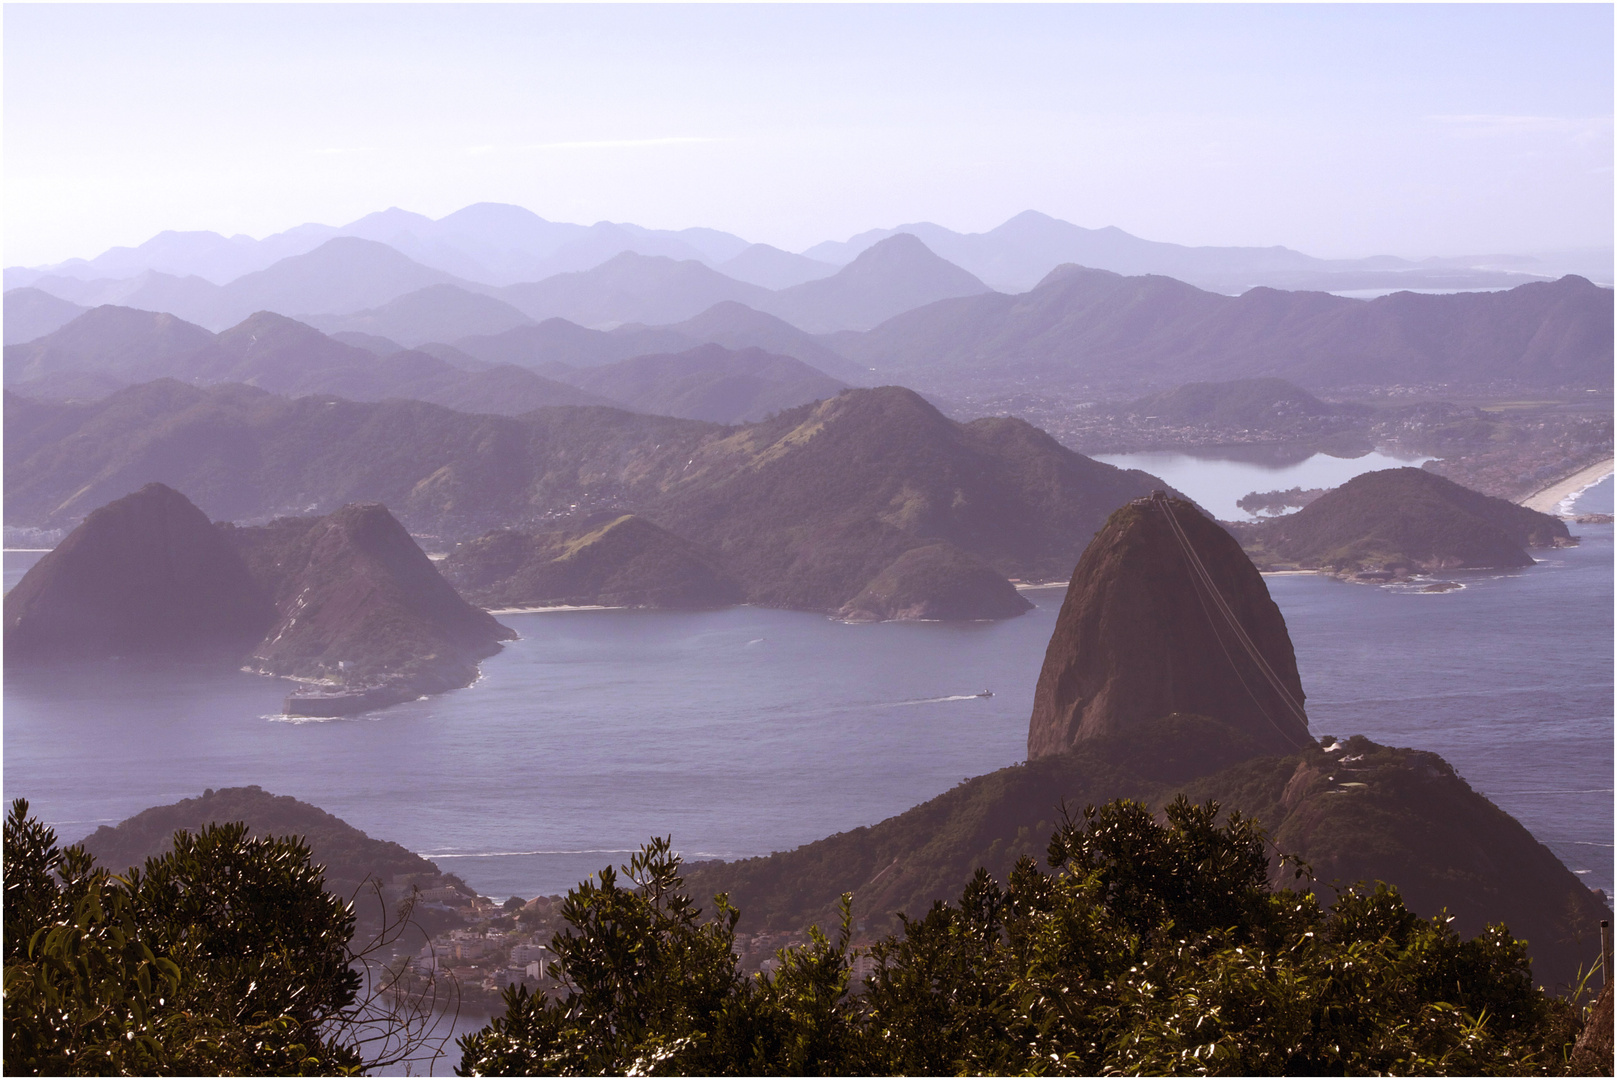 The Magic City of Rio de Janeiro